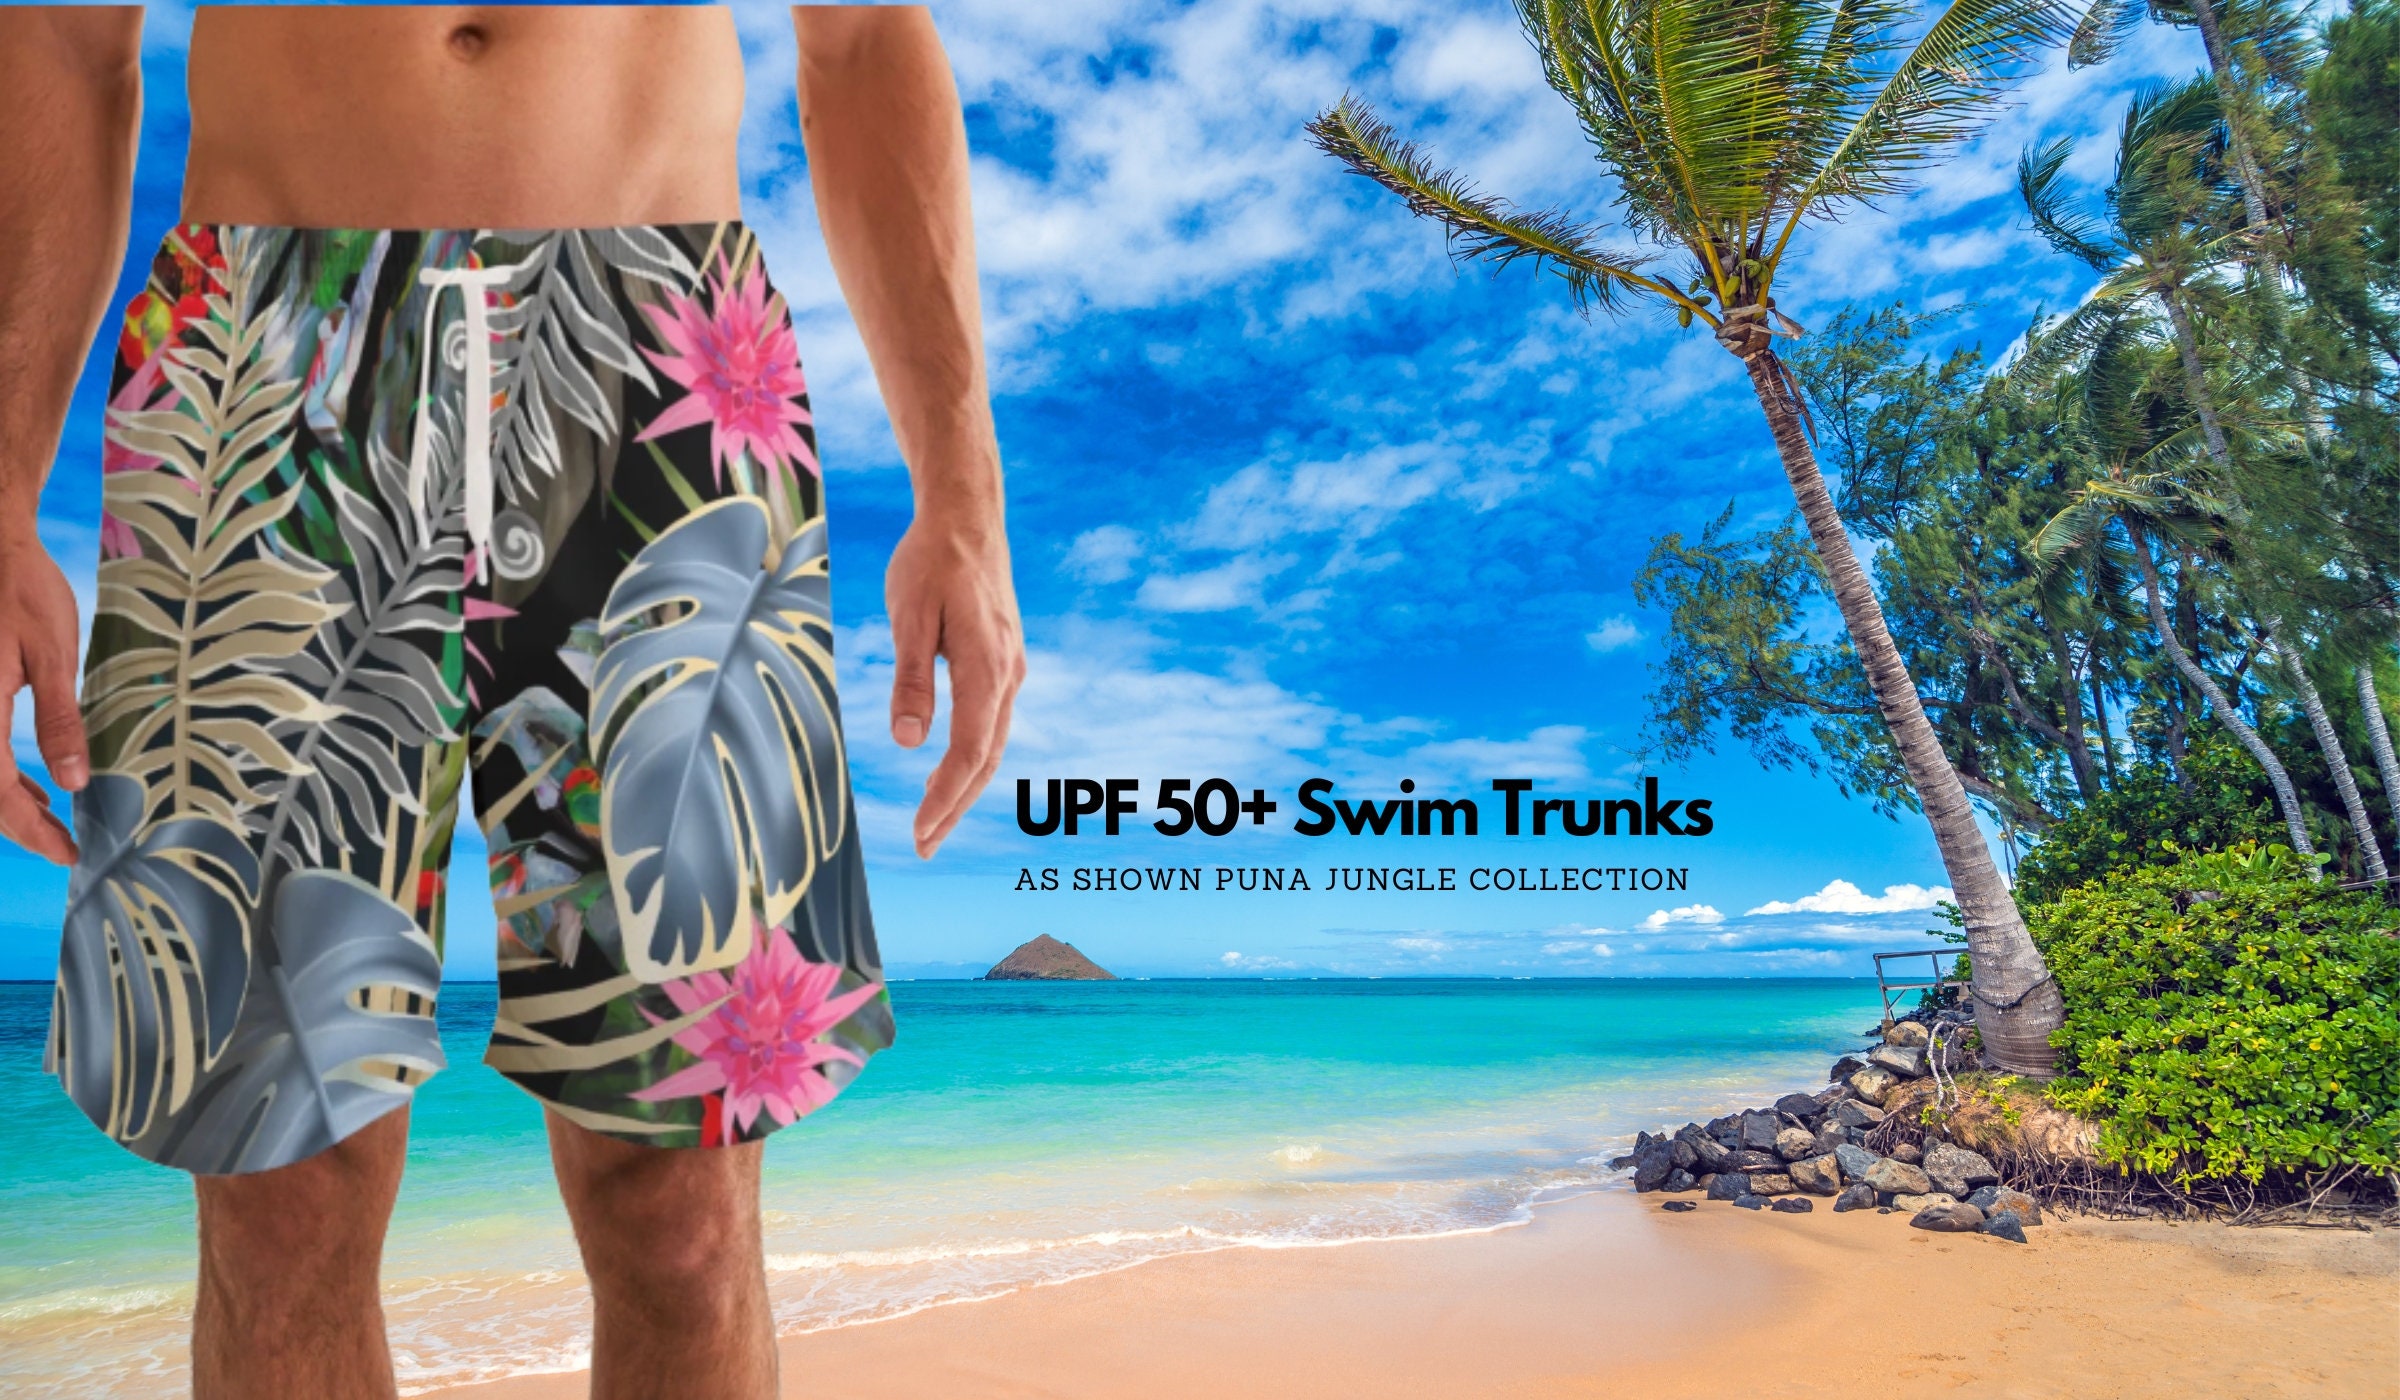 Summer Board Shorts for Women Boho Floral Beachwear Tankini Bikini Bottoms  Swim Trunks Loose Casual Swimwear Holiday Hawaiian Shorts